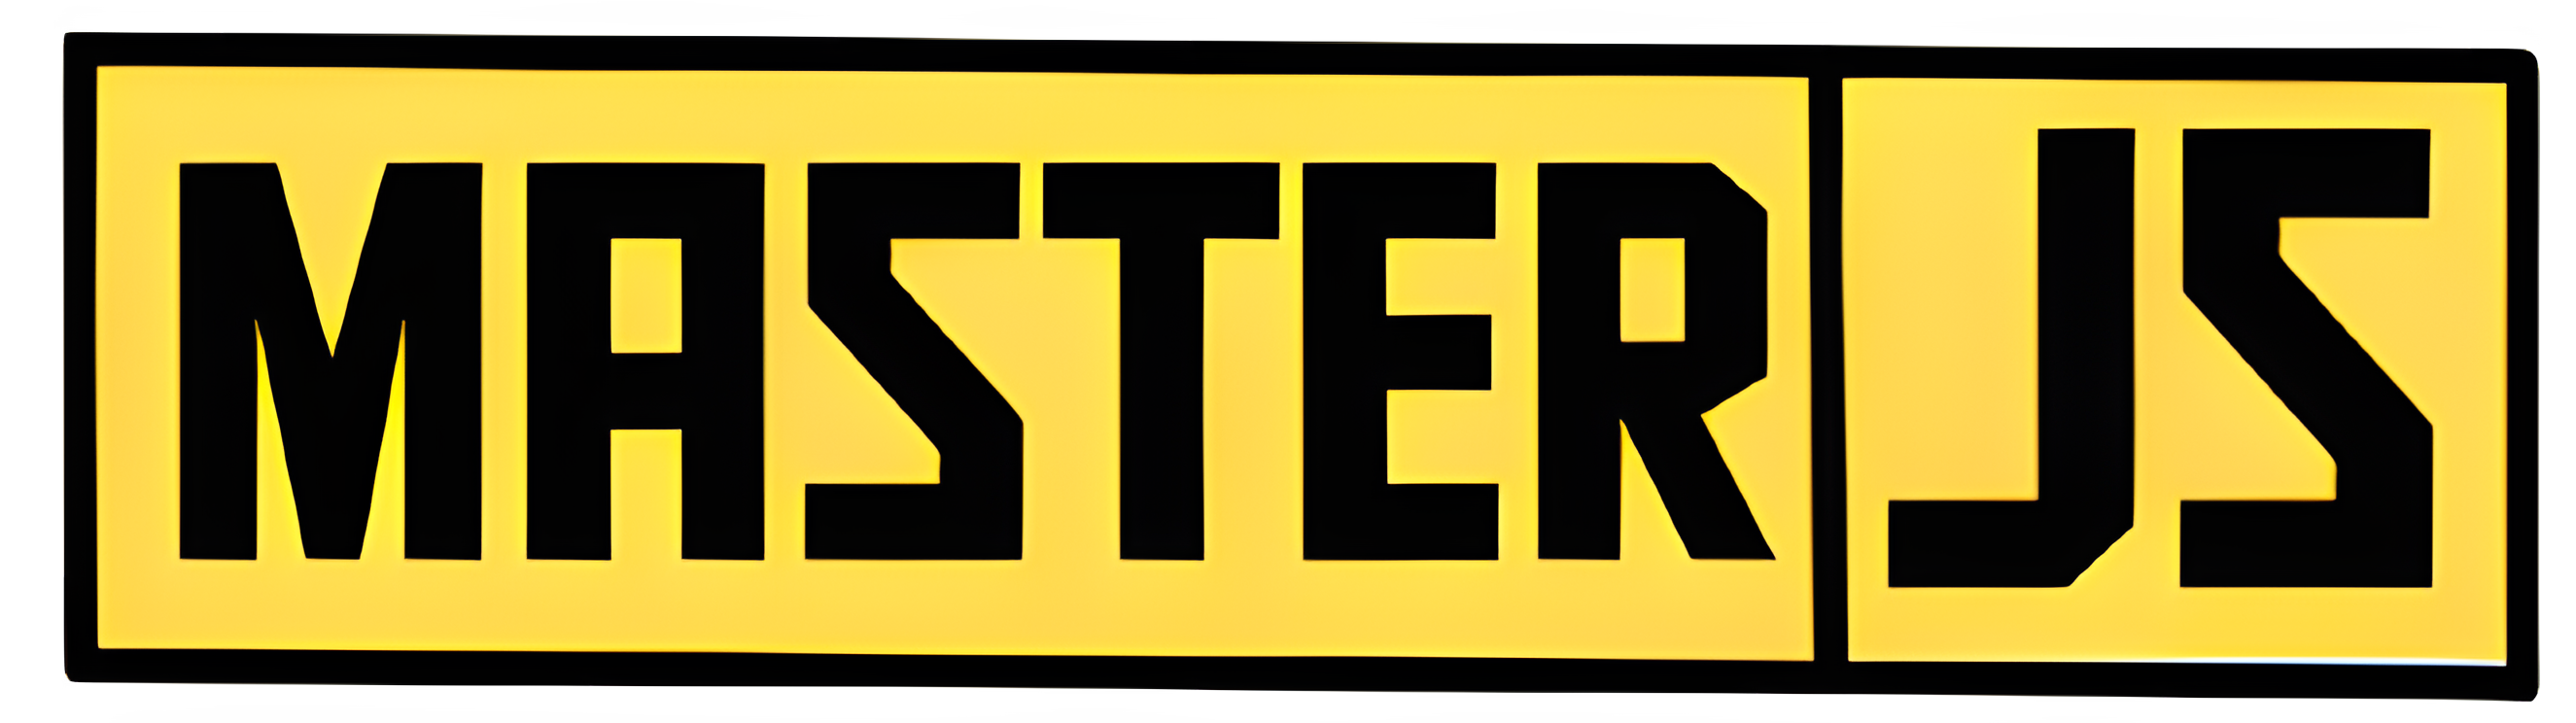 masterJS logo